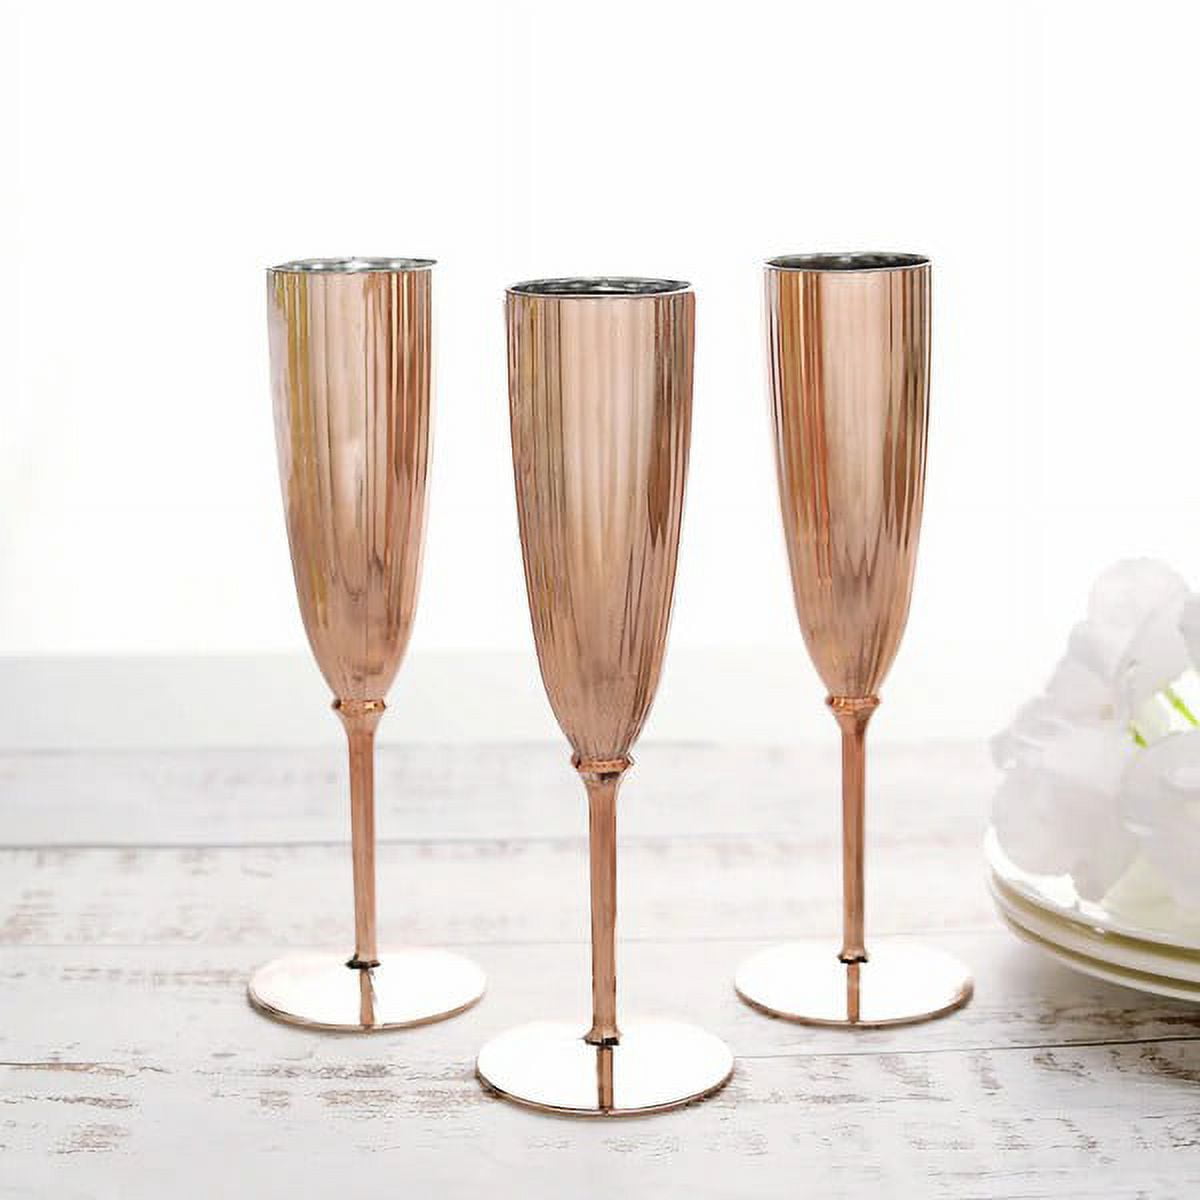 Gala Champagne Flute Glasses Set of 2 7 oz - Creative Kitchen Fargo